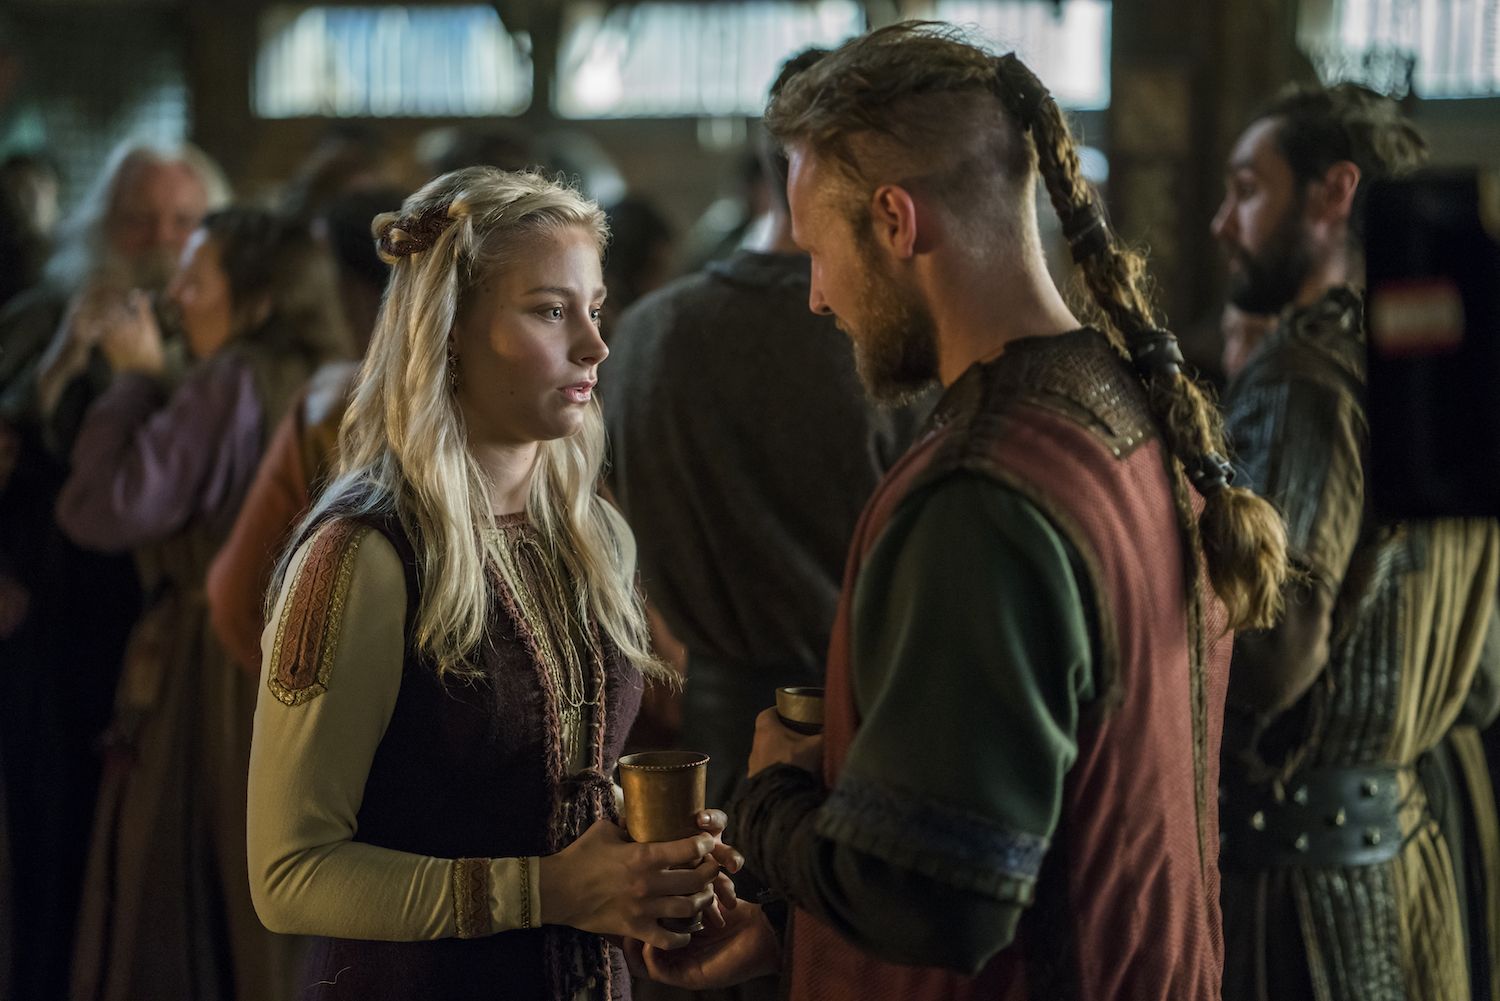 Vikings | Atriz se despede de personagem ao mudar o visual